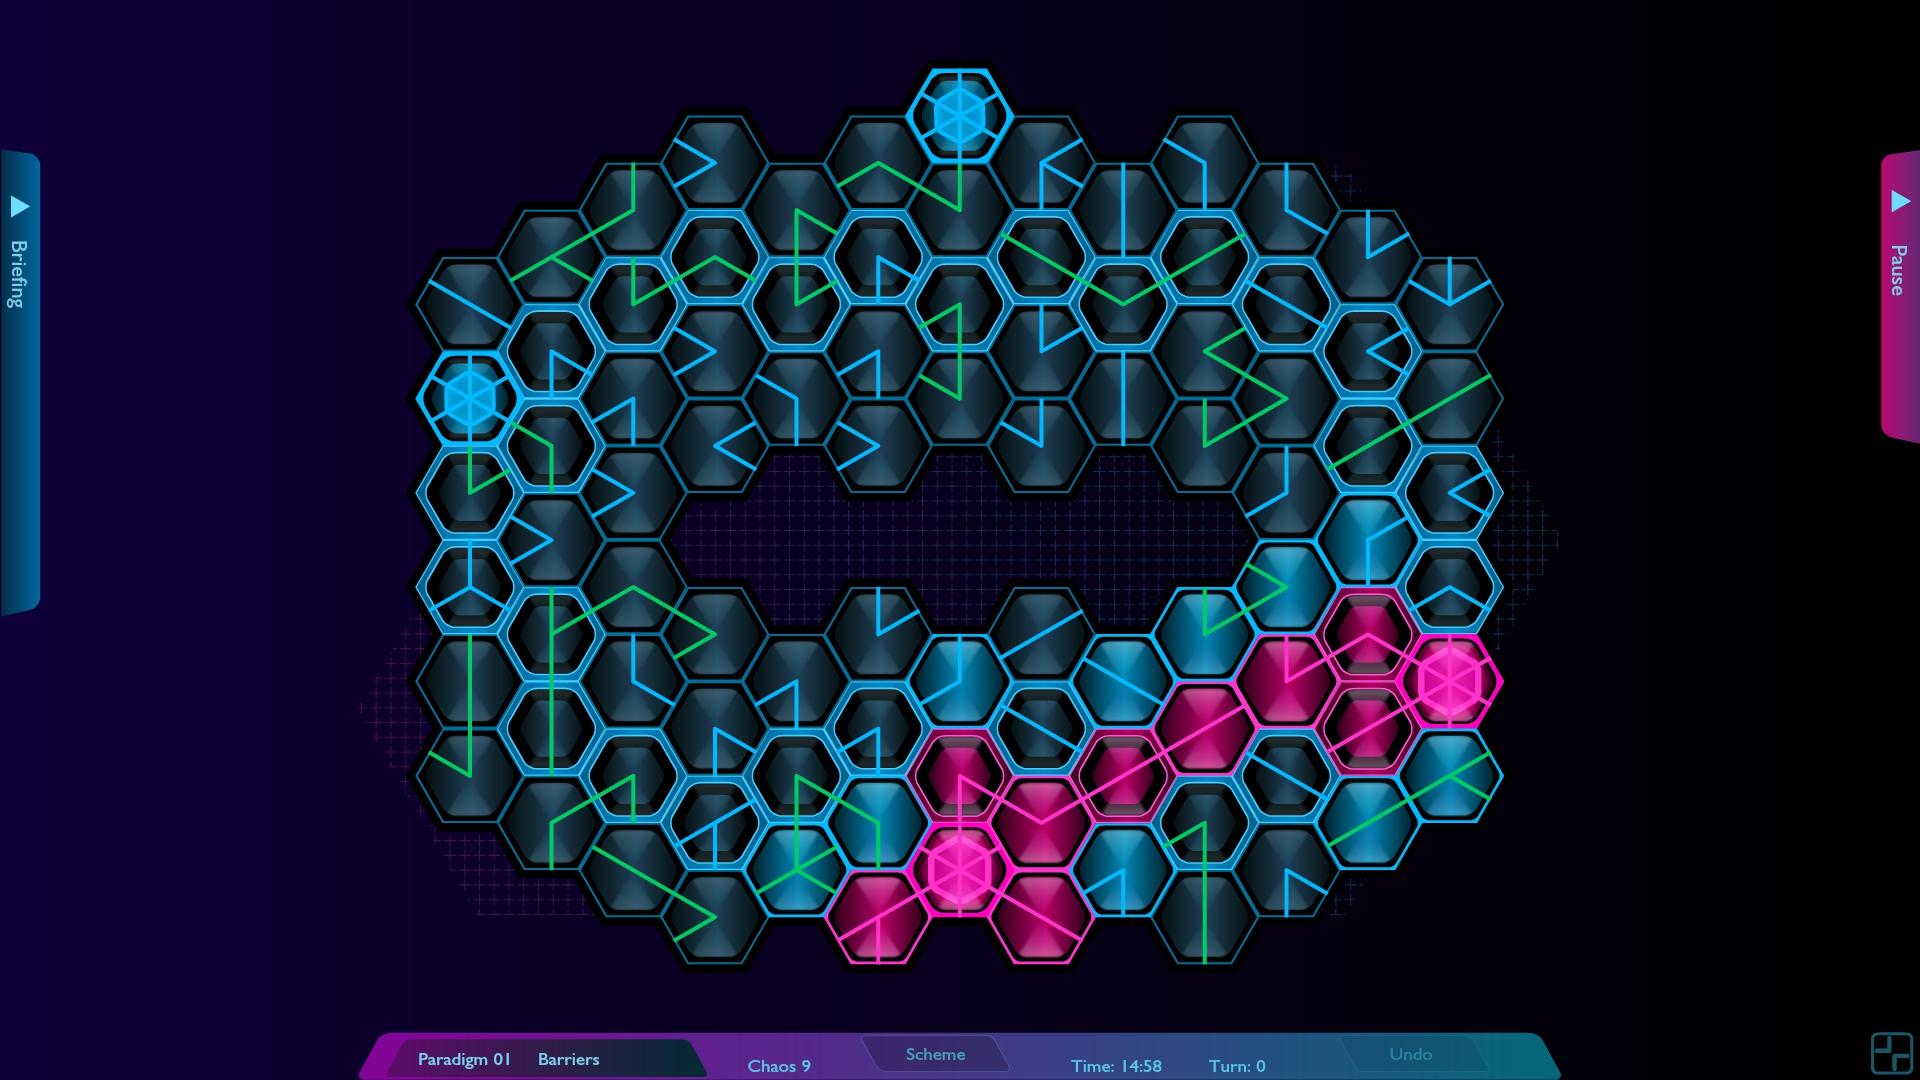 Screenshot №10 from game Hexoscope